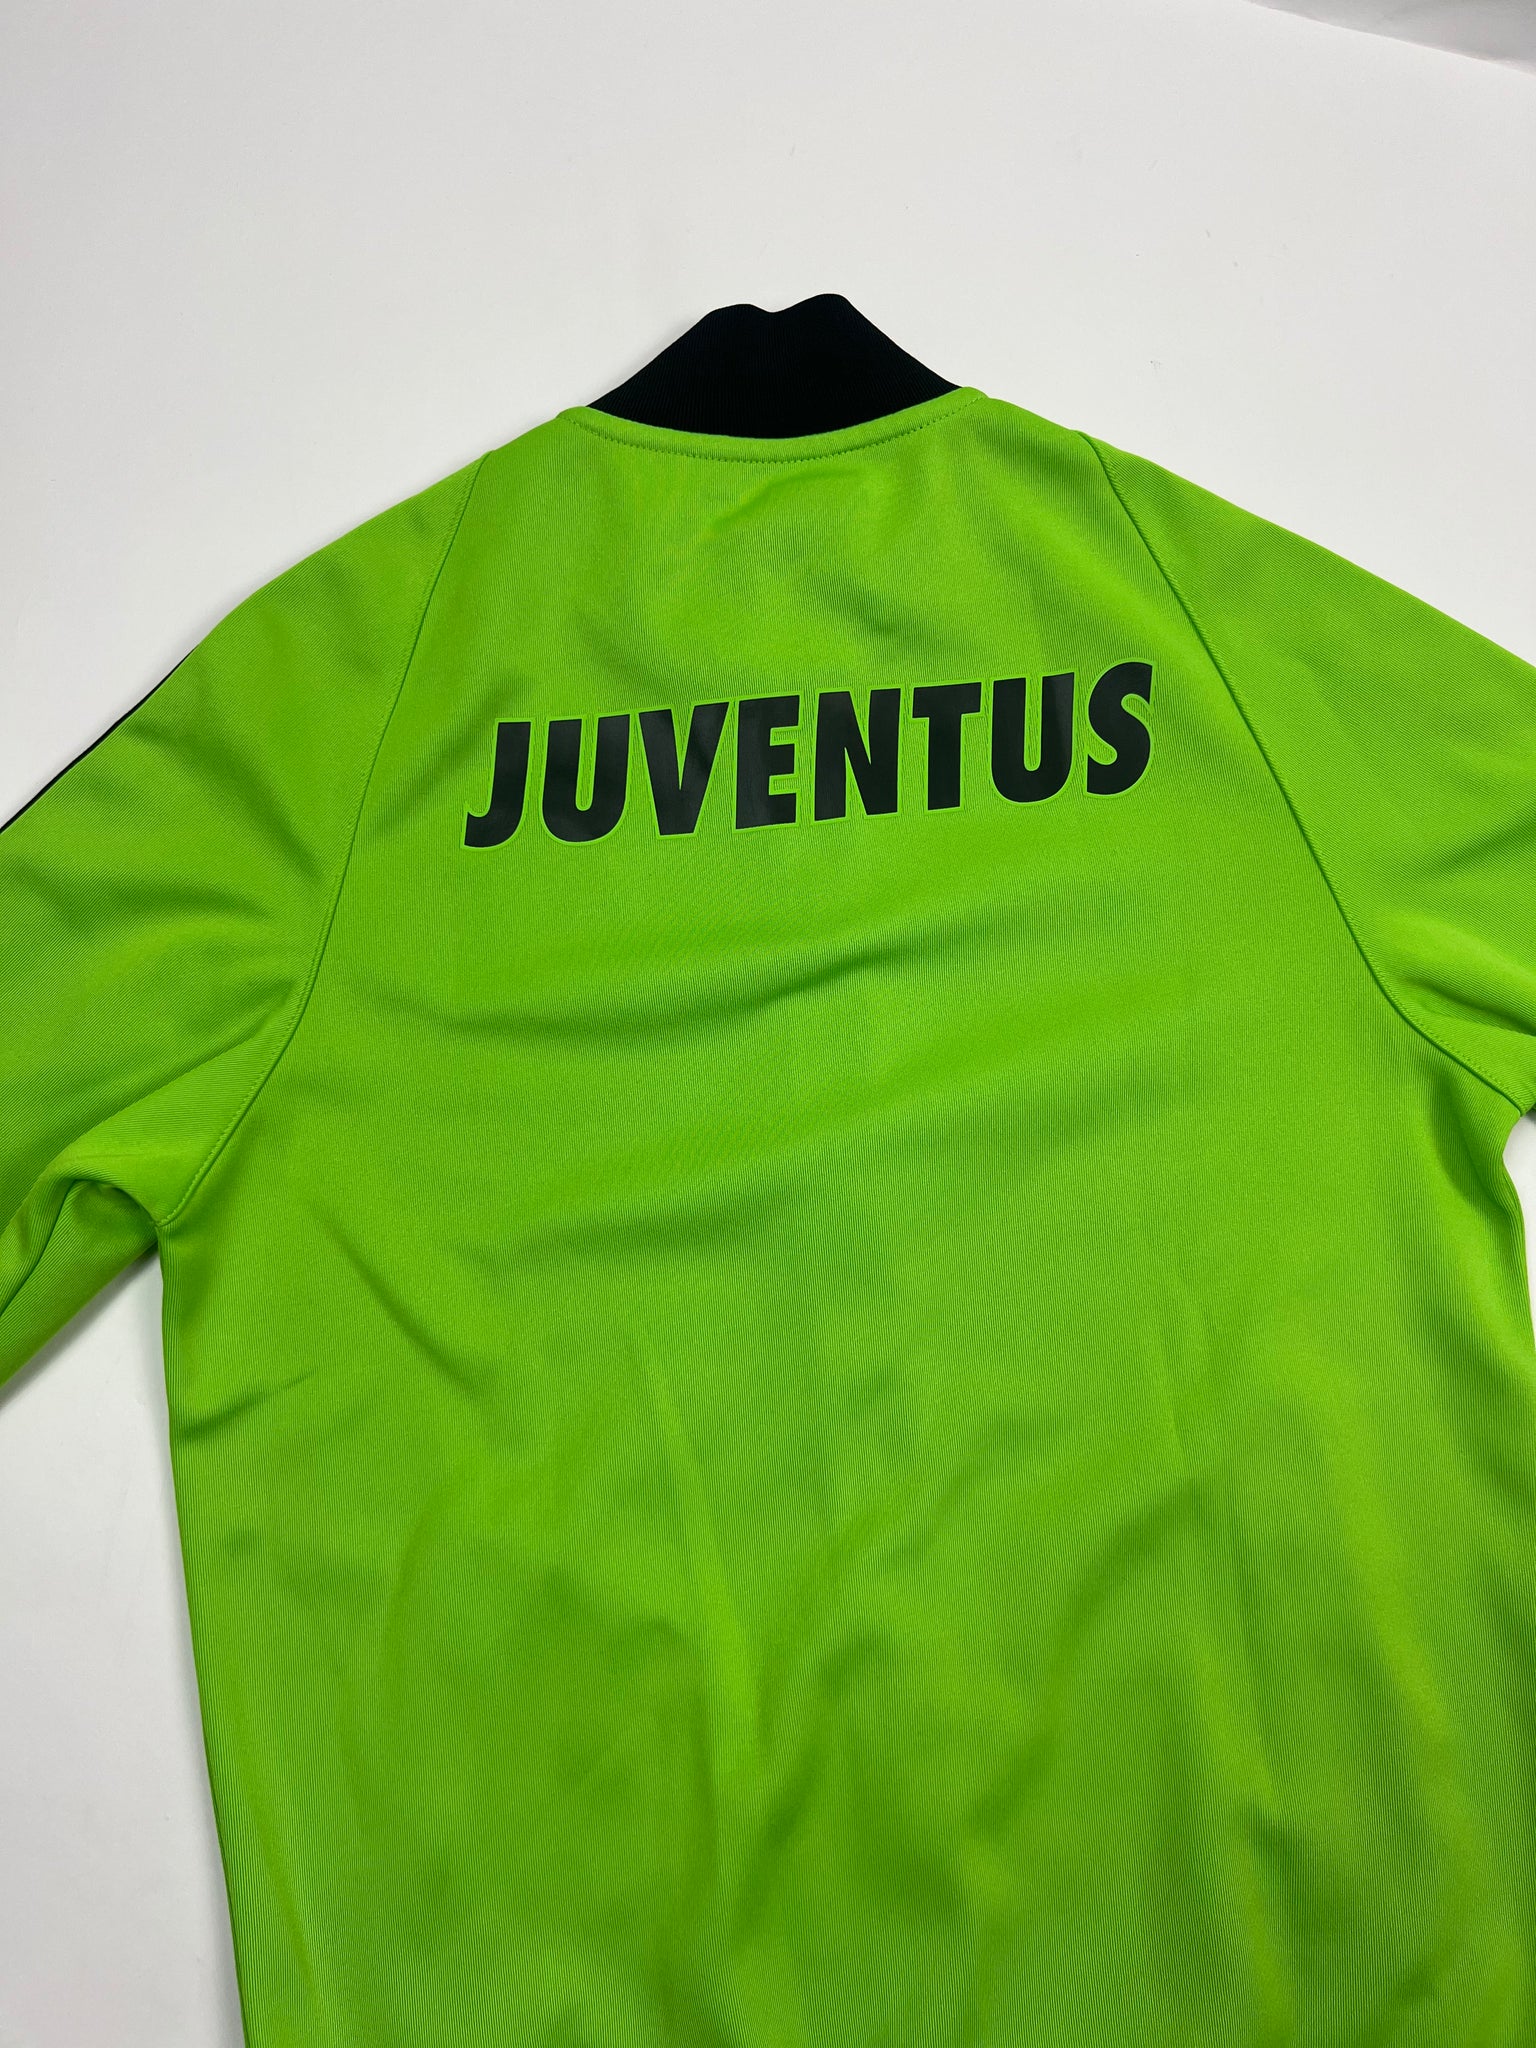 Nike Juventus Track Jacket (S)